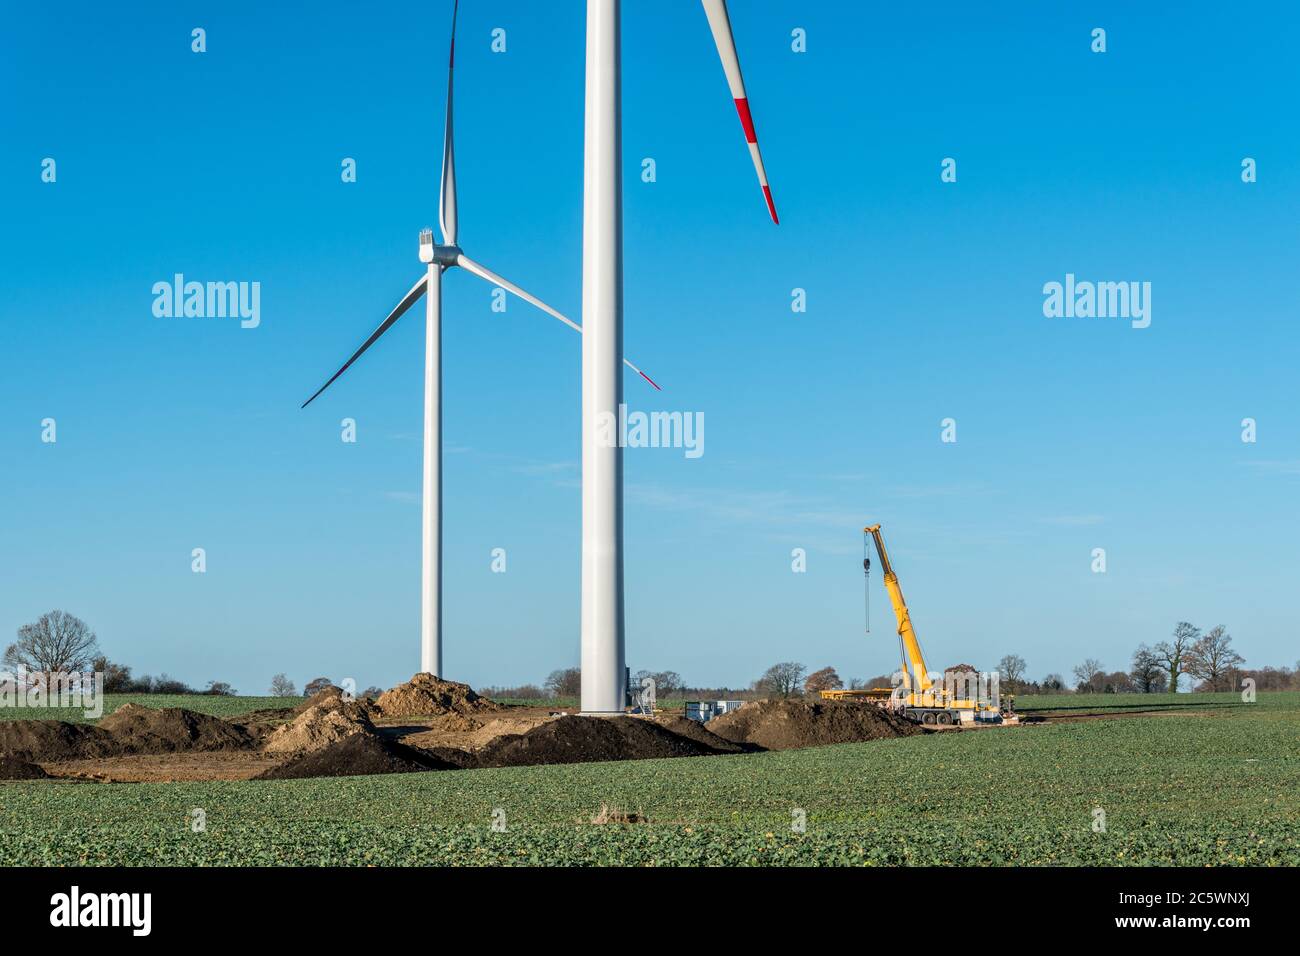 Ein neuer Windpark entsteht auf einem Feld nahe Kiel Foto de stock